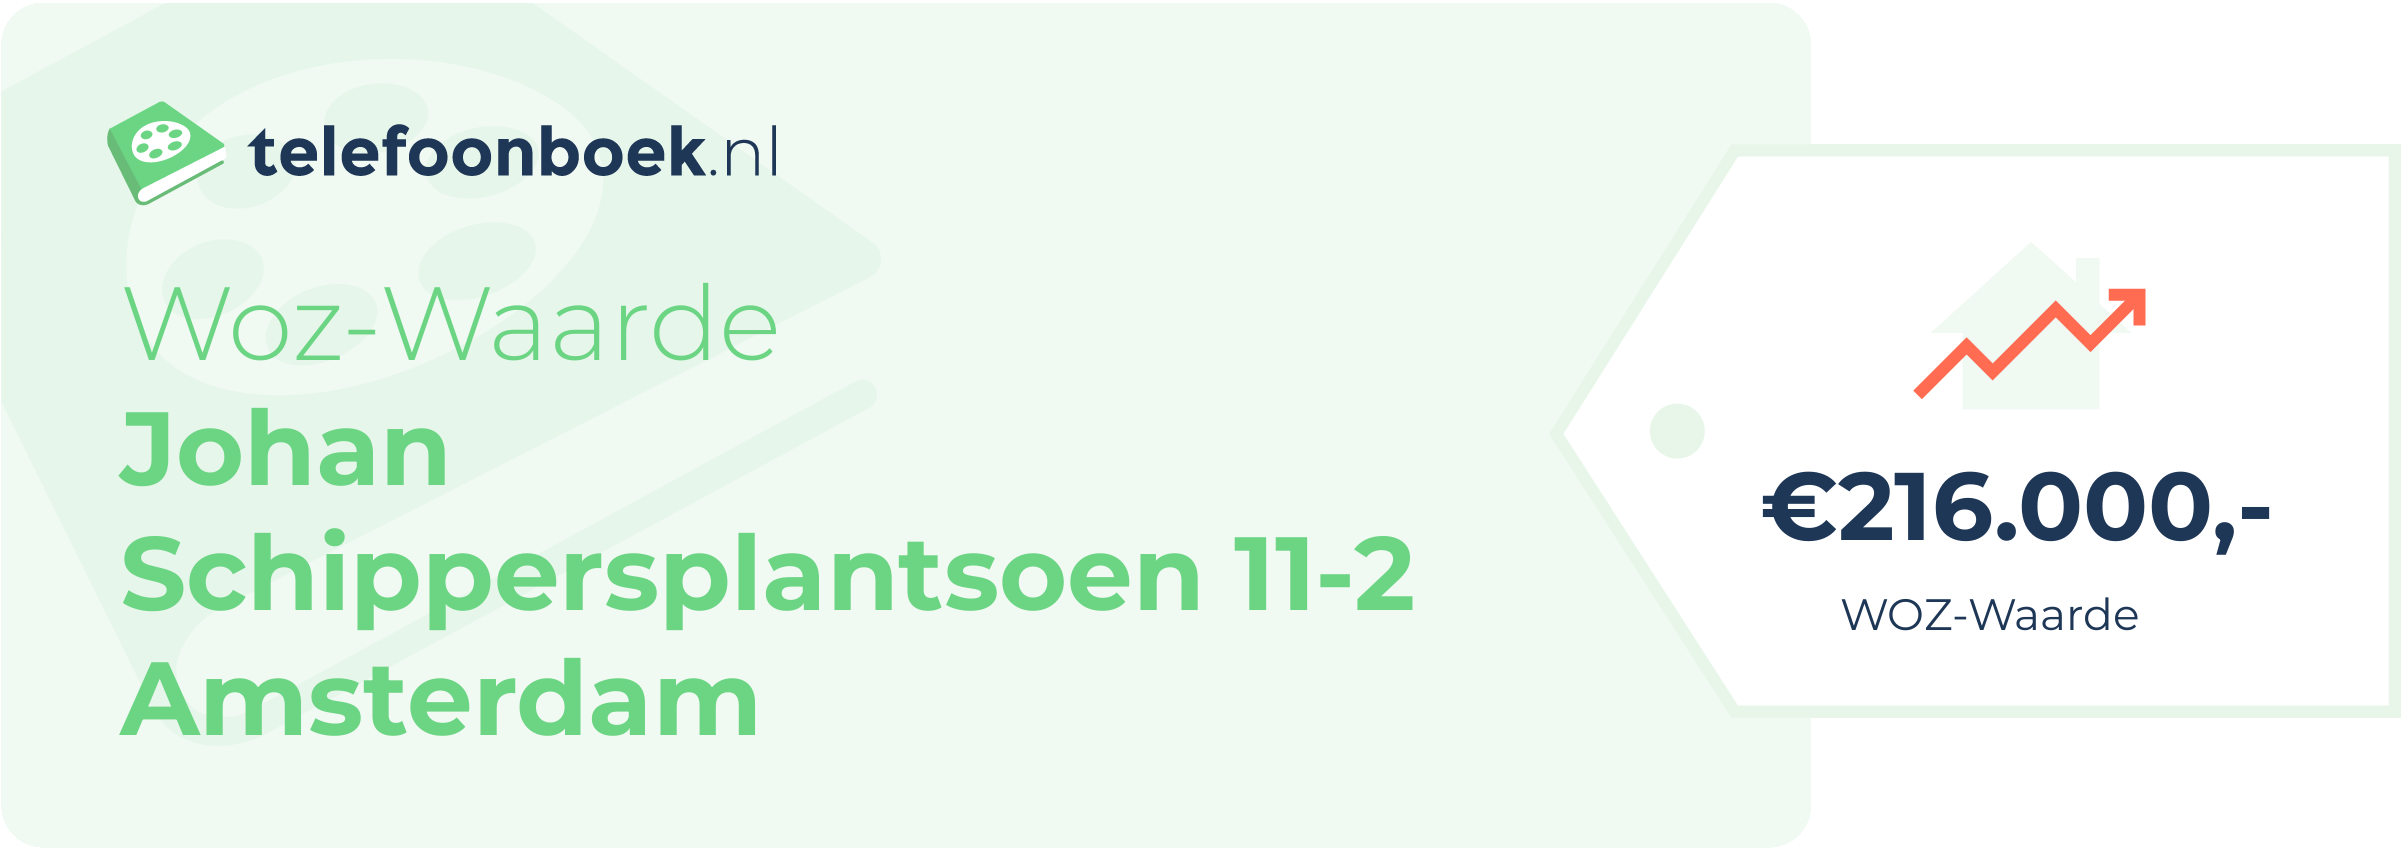 WOZ-waarde Johan Schippersplantsoen 11-2 Amsterdam